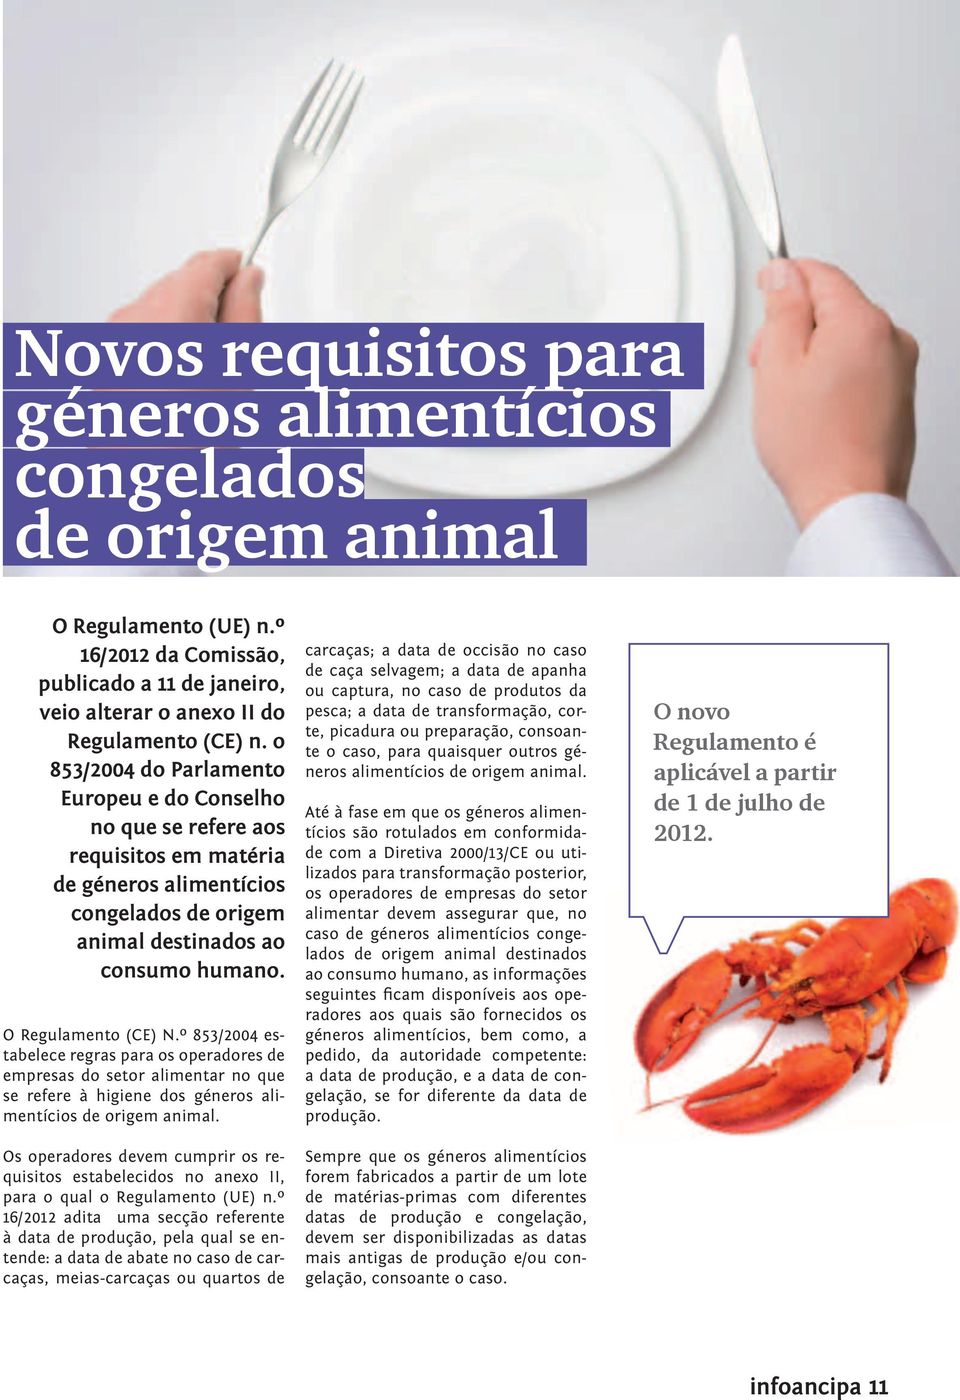 º 853/2004 estabelece regras para os operadores de empresas do setor alimentar no que se refere à higiene dos géneros alimentícios de origem animal.